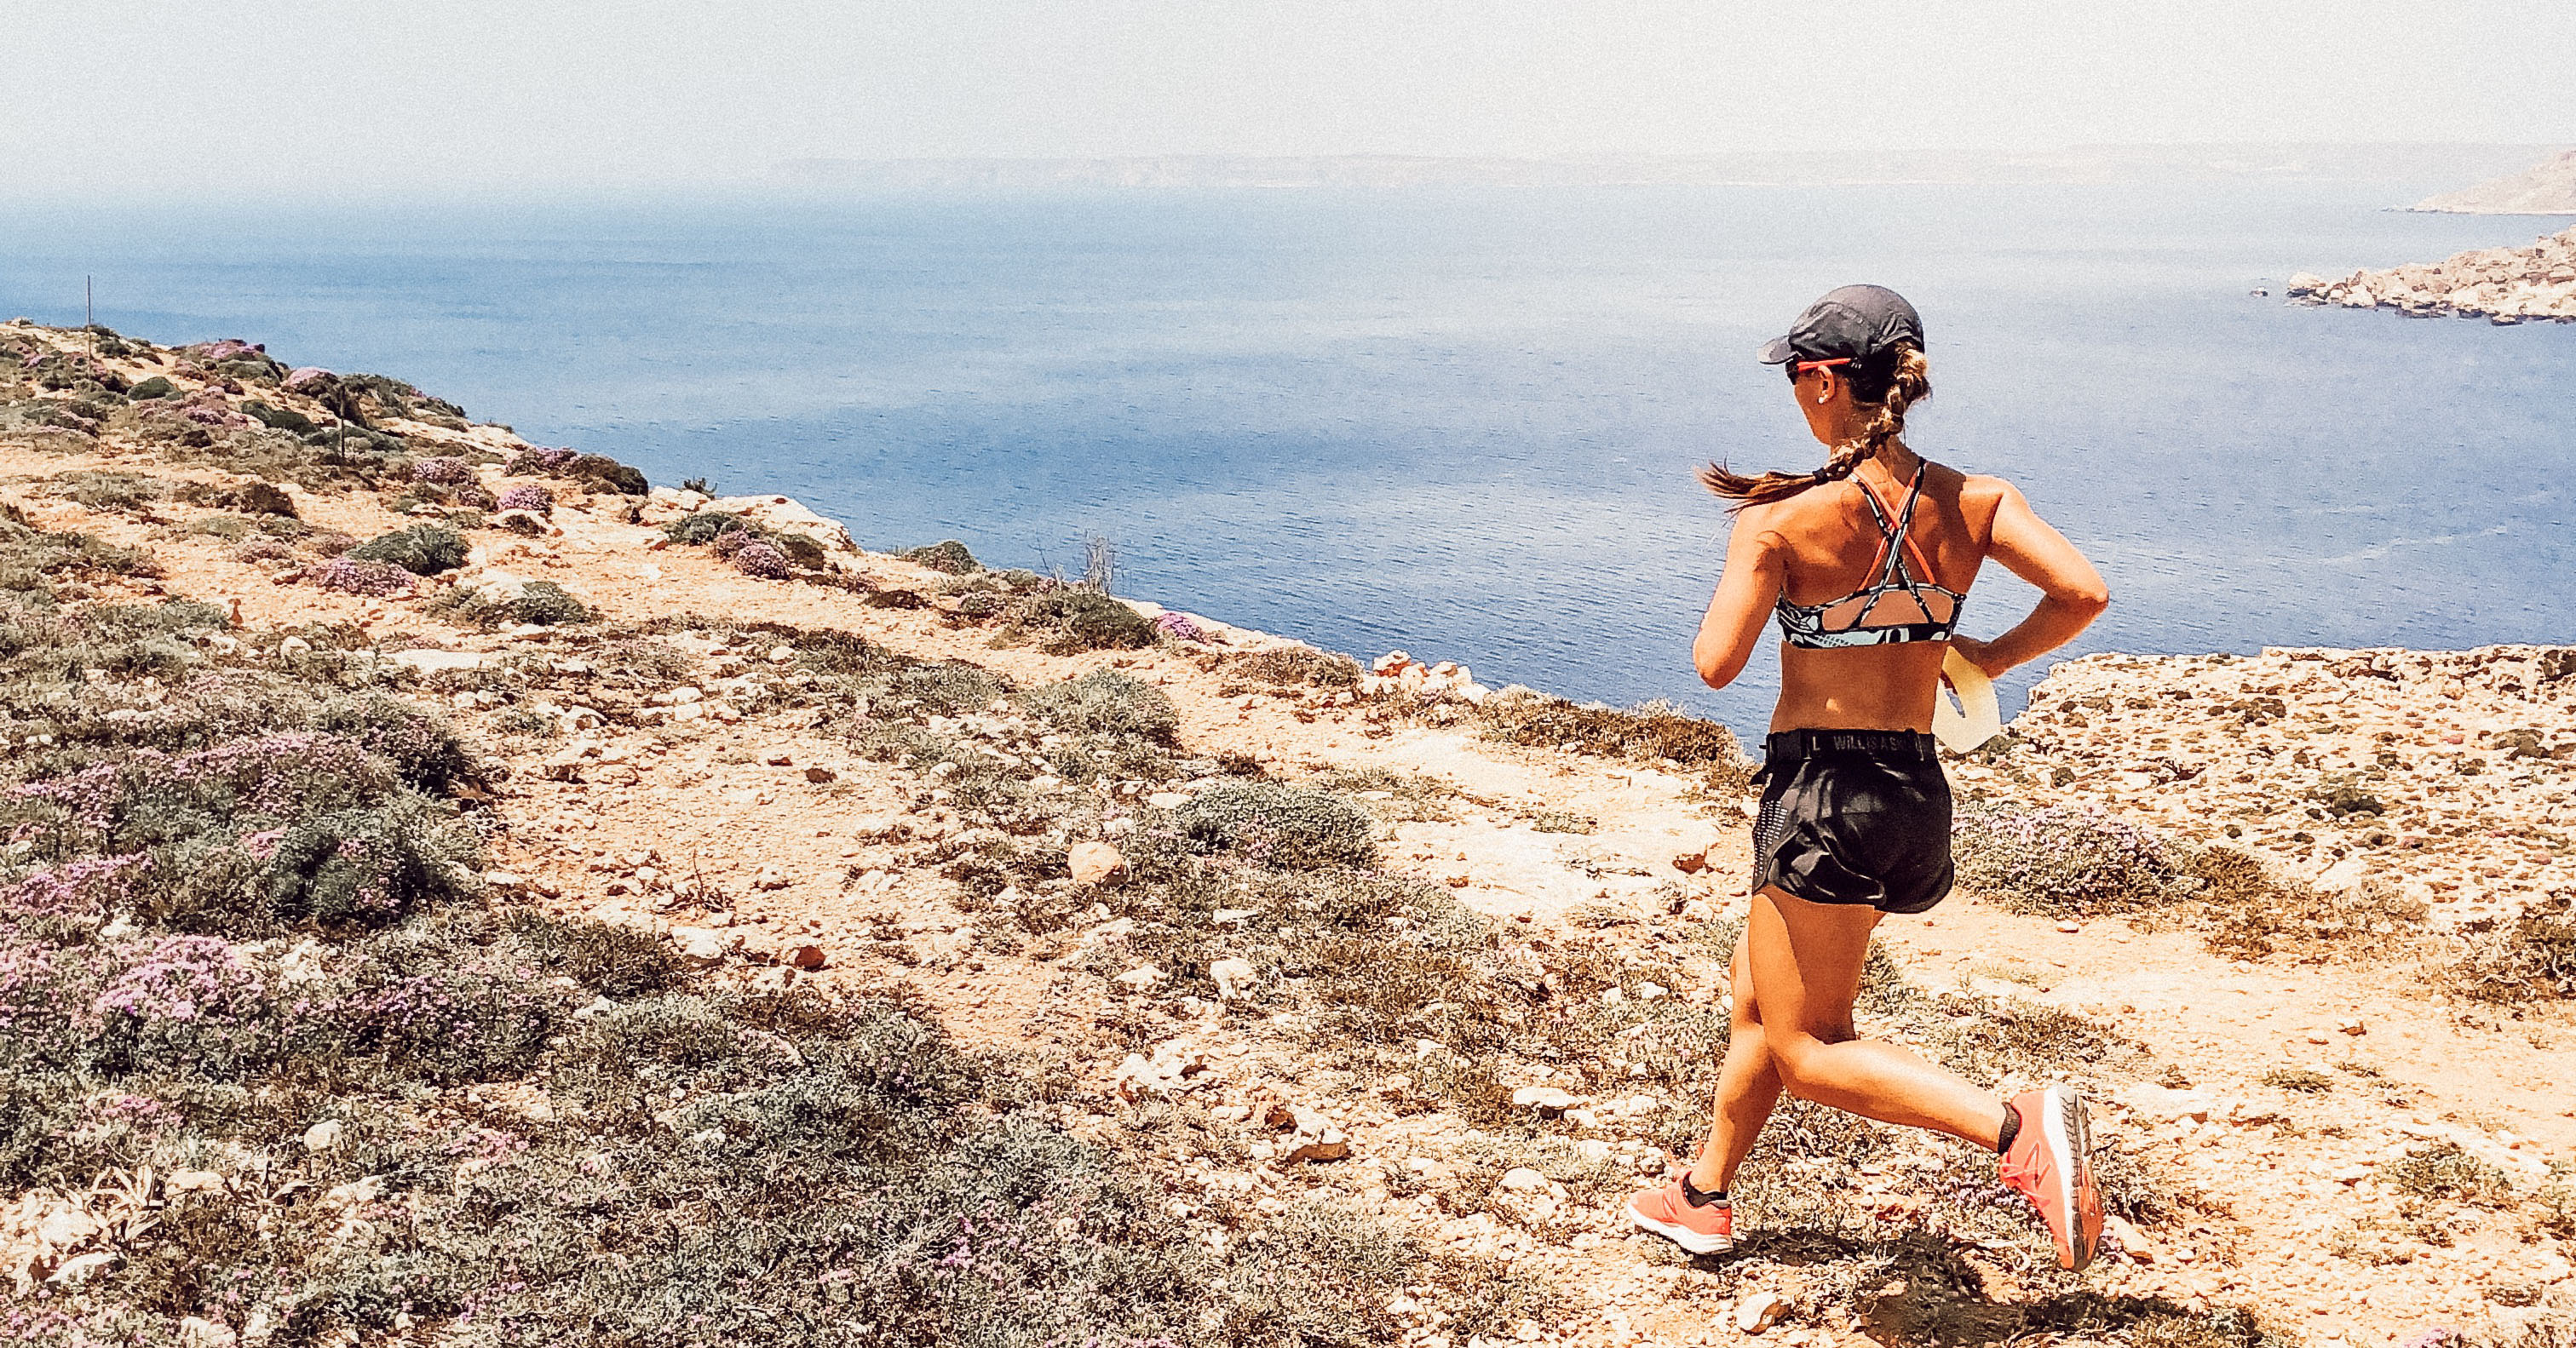 Corriendo en Malta: descubra las seis rutas de carrera favoritas de Maltés Angele Satoorioo Atlete en la isla.'athlète maltaise Angele Satariano sur l'île.